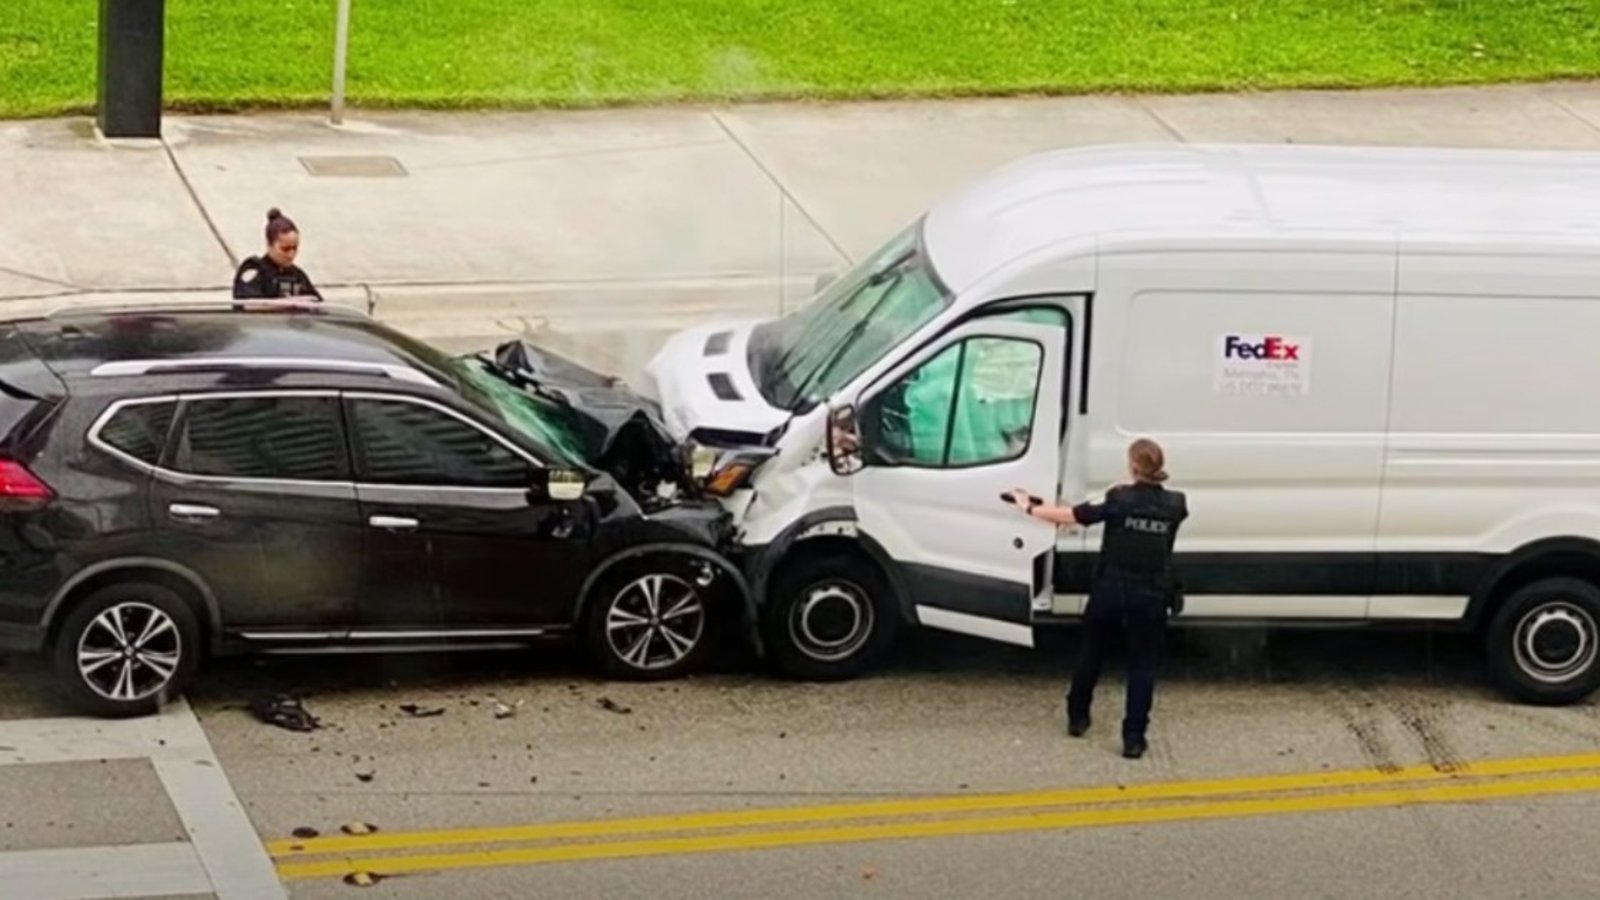 Un automobiliste fonce dans un camion FedEx pendant que sa copine lui fait une gâterie